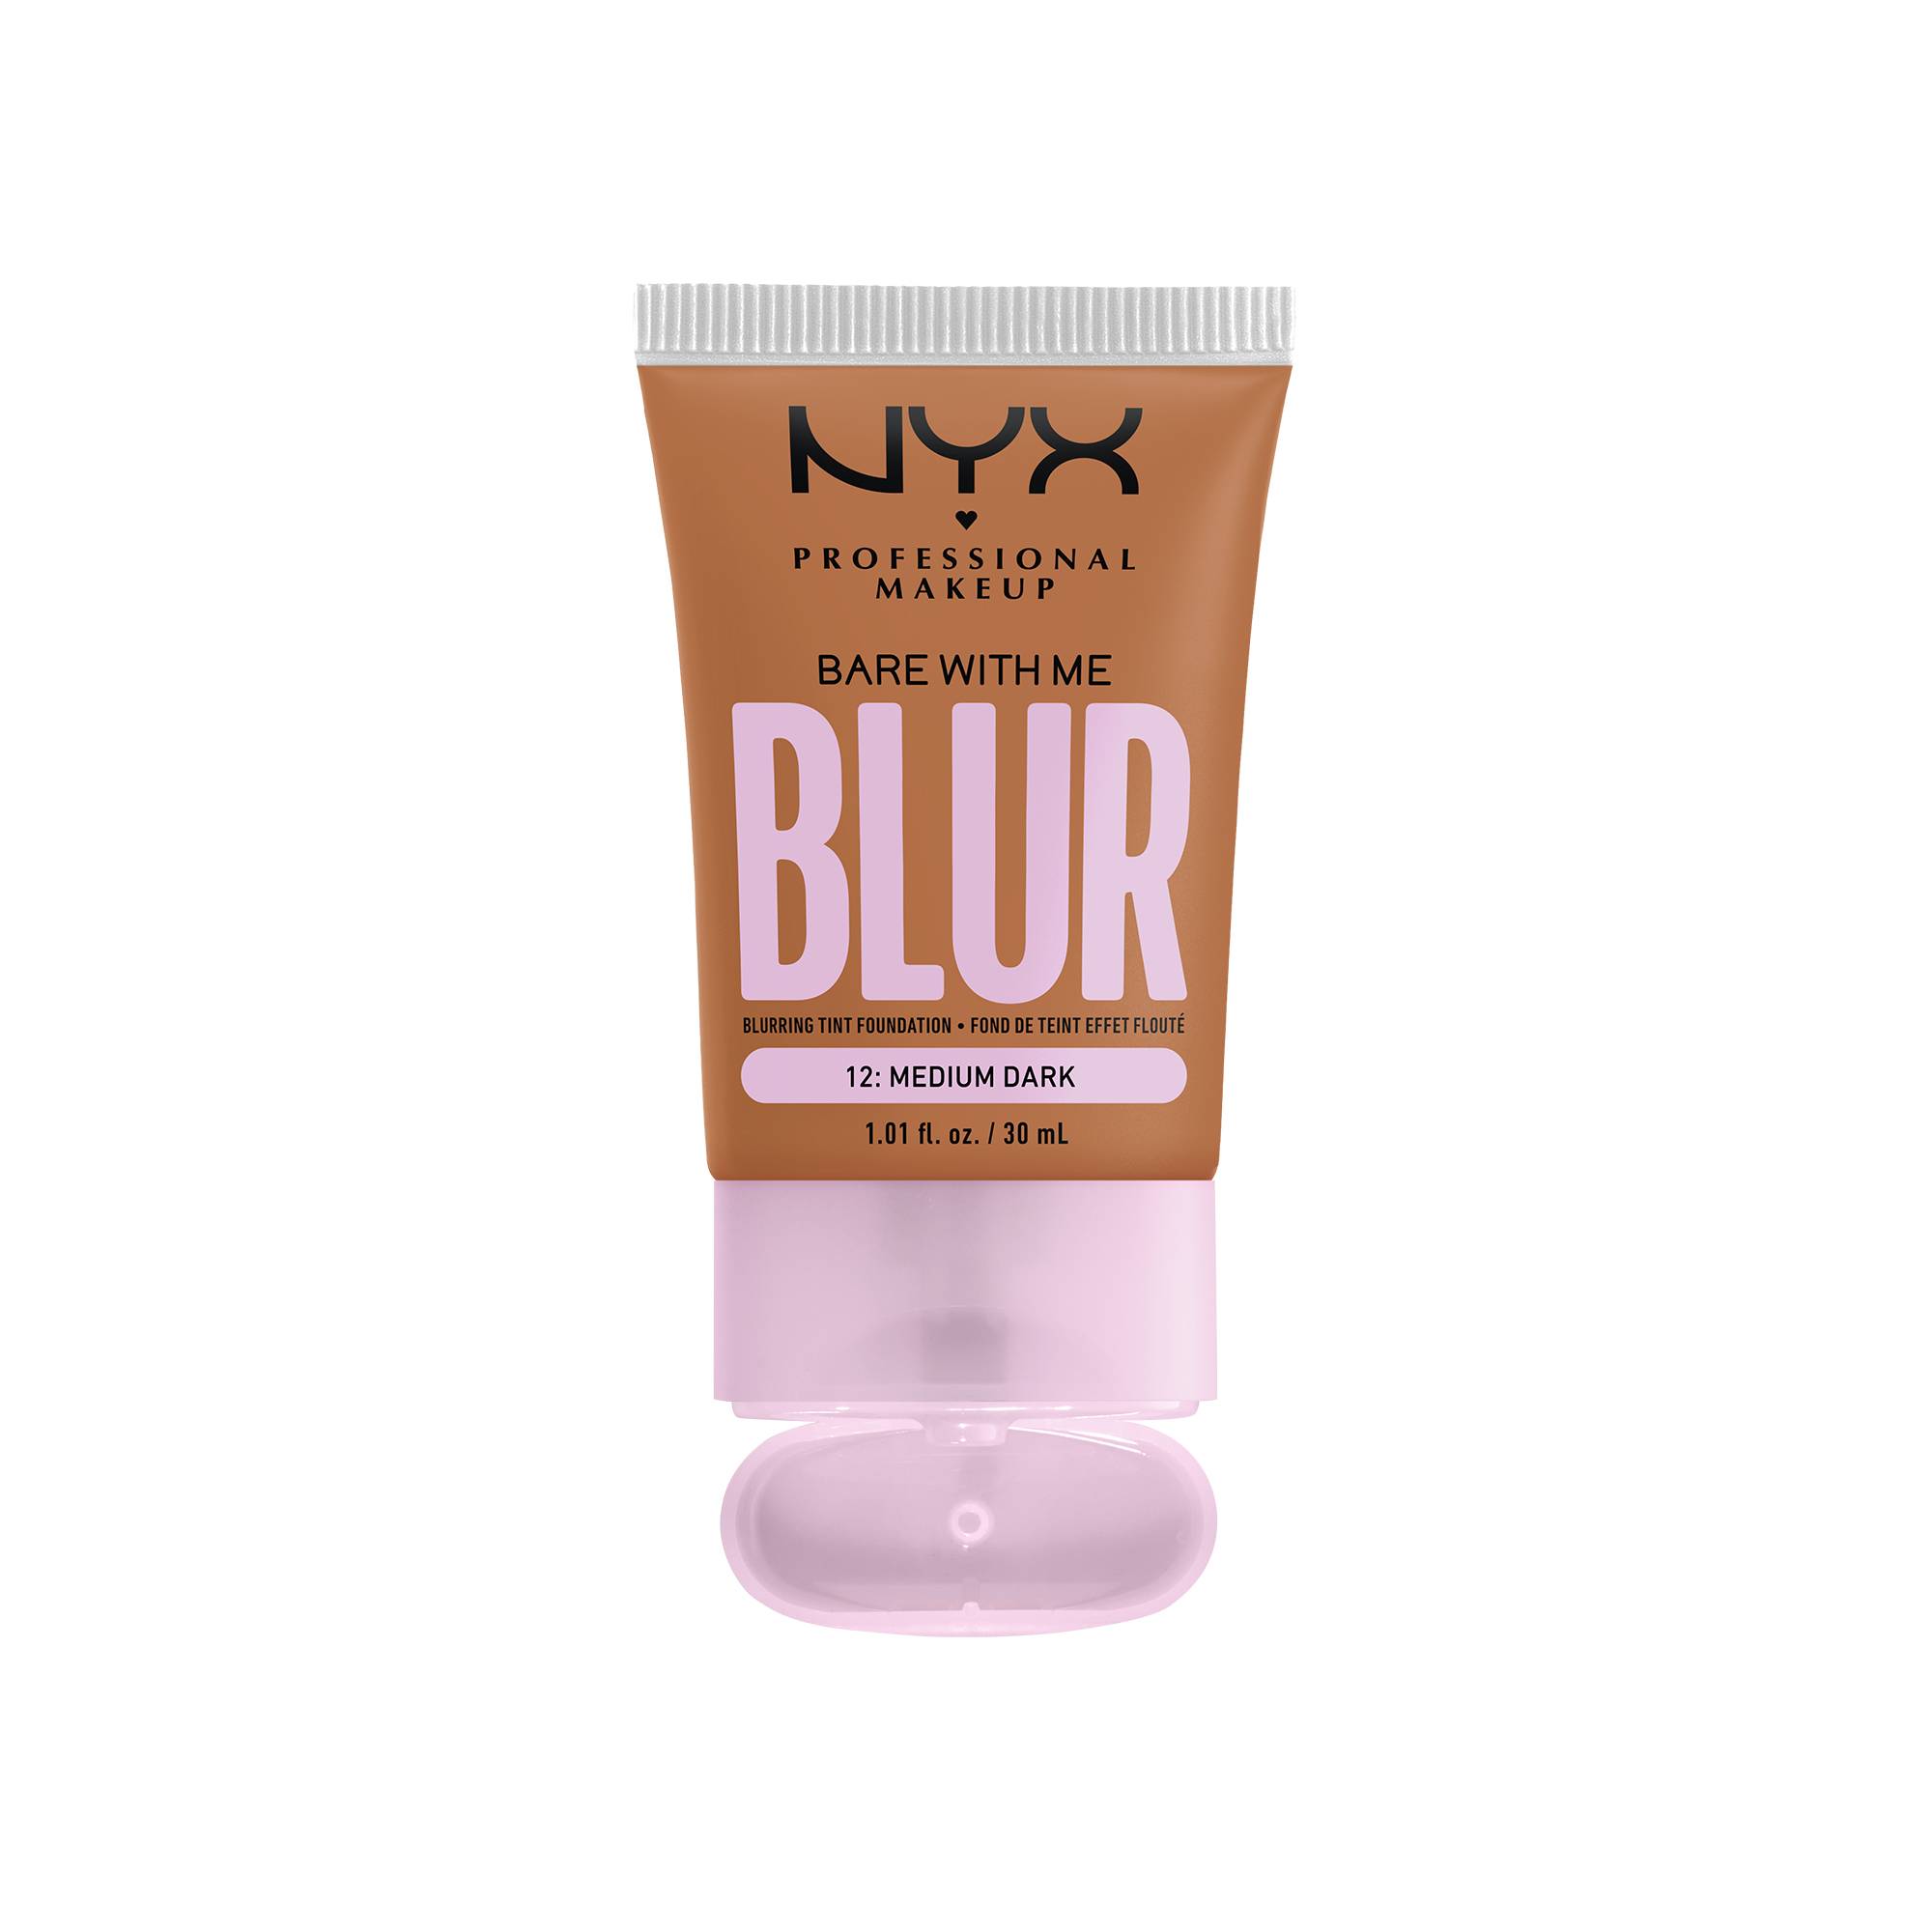 Fond de teint effet flouté Bare With Me Blur Medium Dark de la marque NYX Professional Makeup - 1